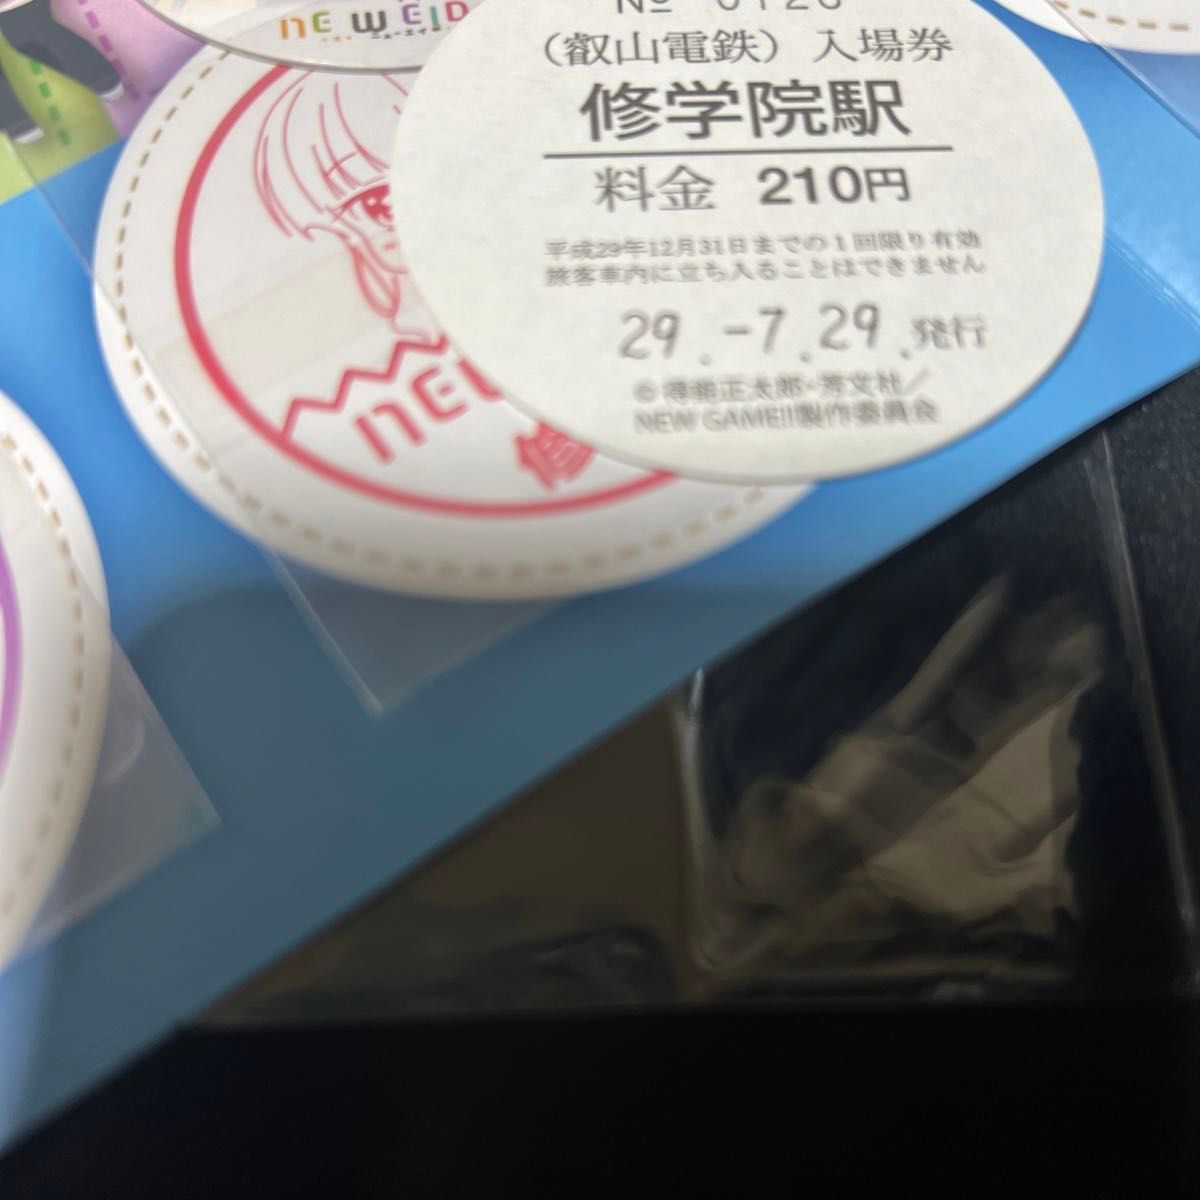 「叡山電鉄」×『NEW GAME!!』コラボきっぷ ヘッドマークきっぷのセット ニューゲーム 切符